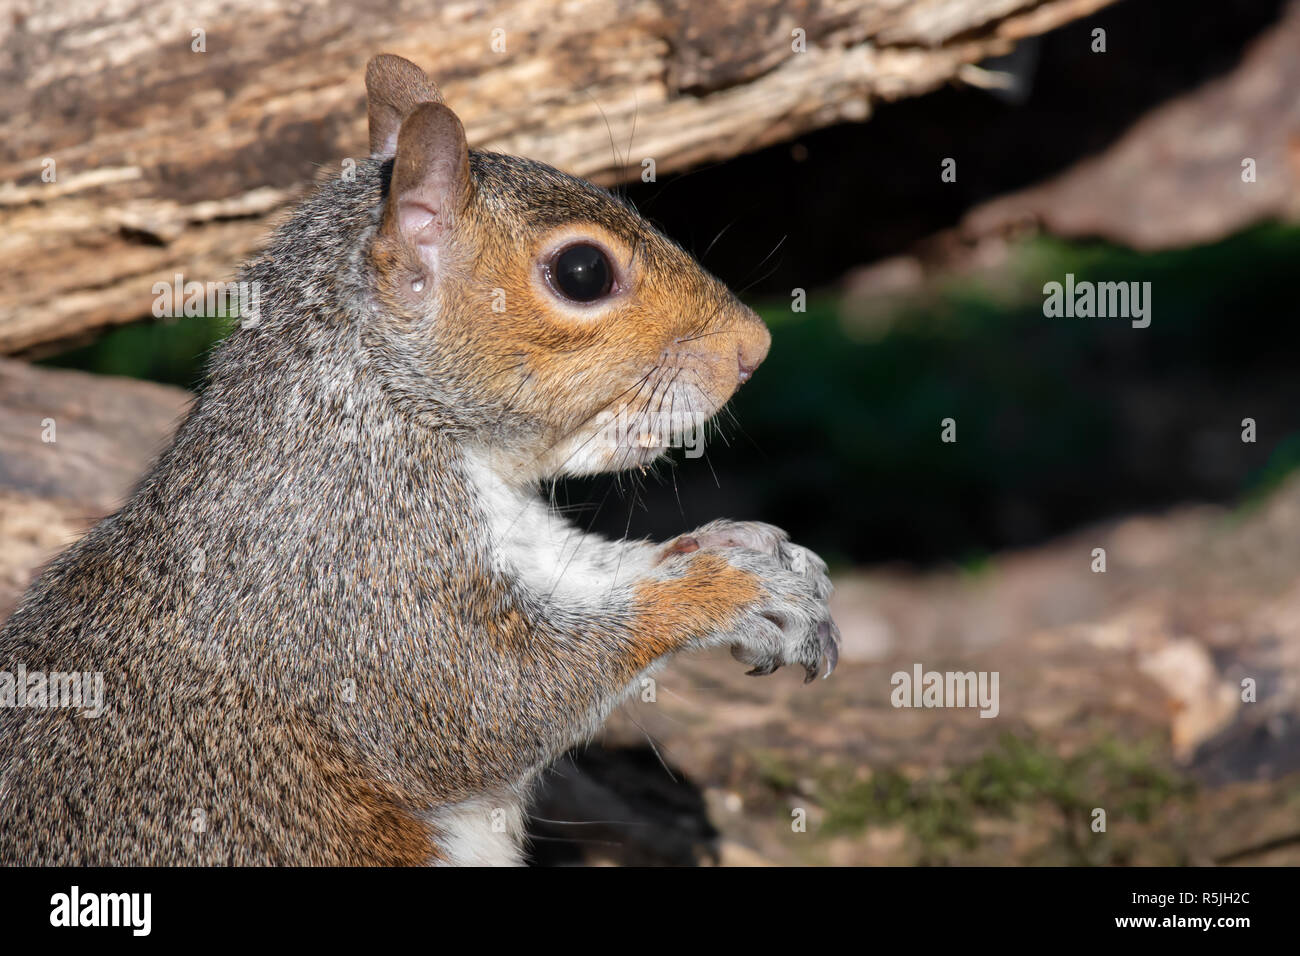 Eine sehr enge halbe Länge Profil Portrait von einem grauen Eichhörnchen. Es ist intensiv starrt auf der rechten Seite. Stockfoto